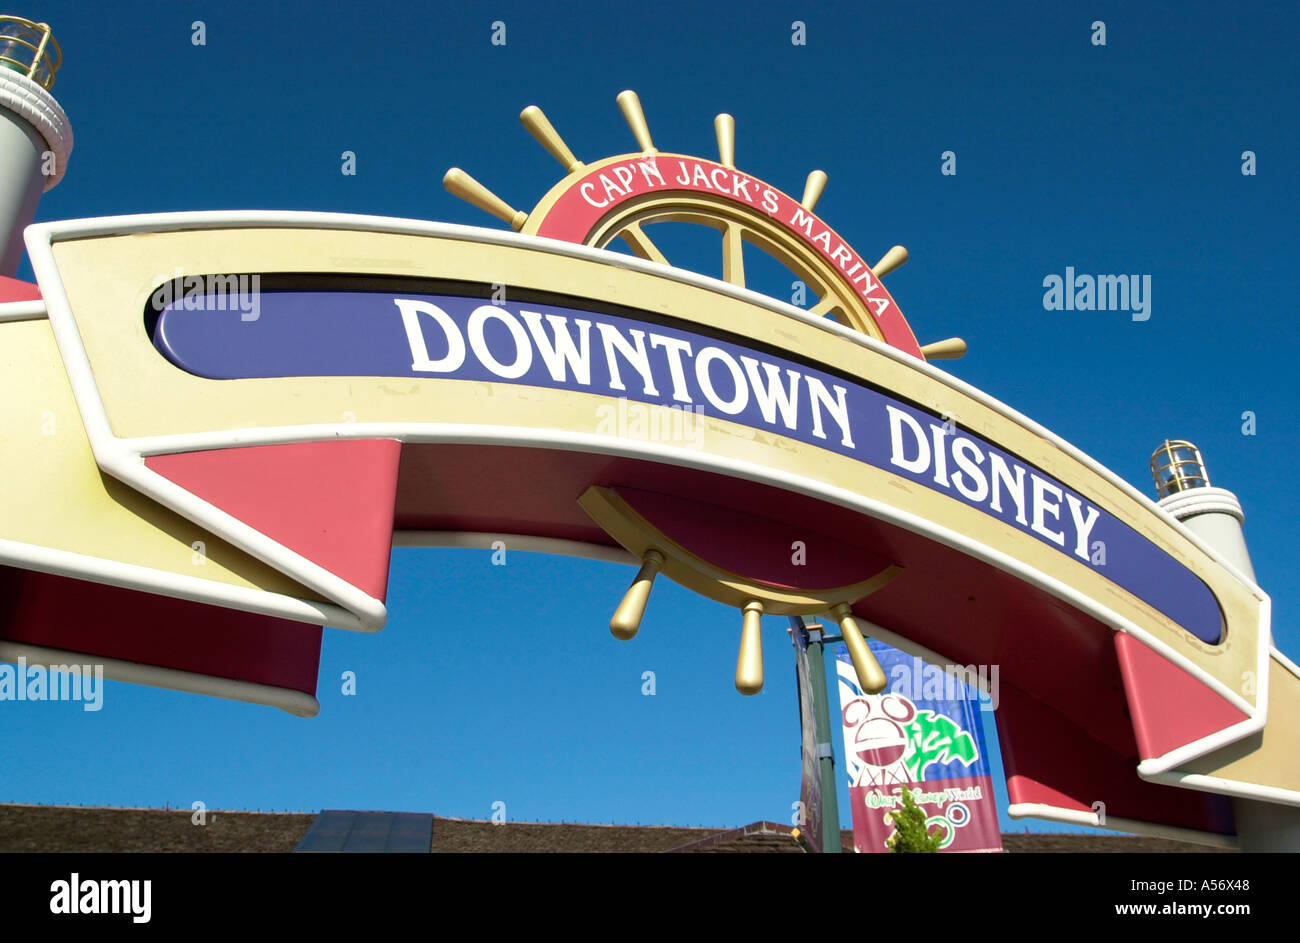 Downtown Disney Eingang Sisgn, Lake Buena Vista, Orlando, Florida, USA Stockfoto